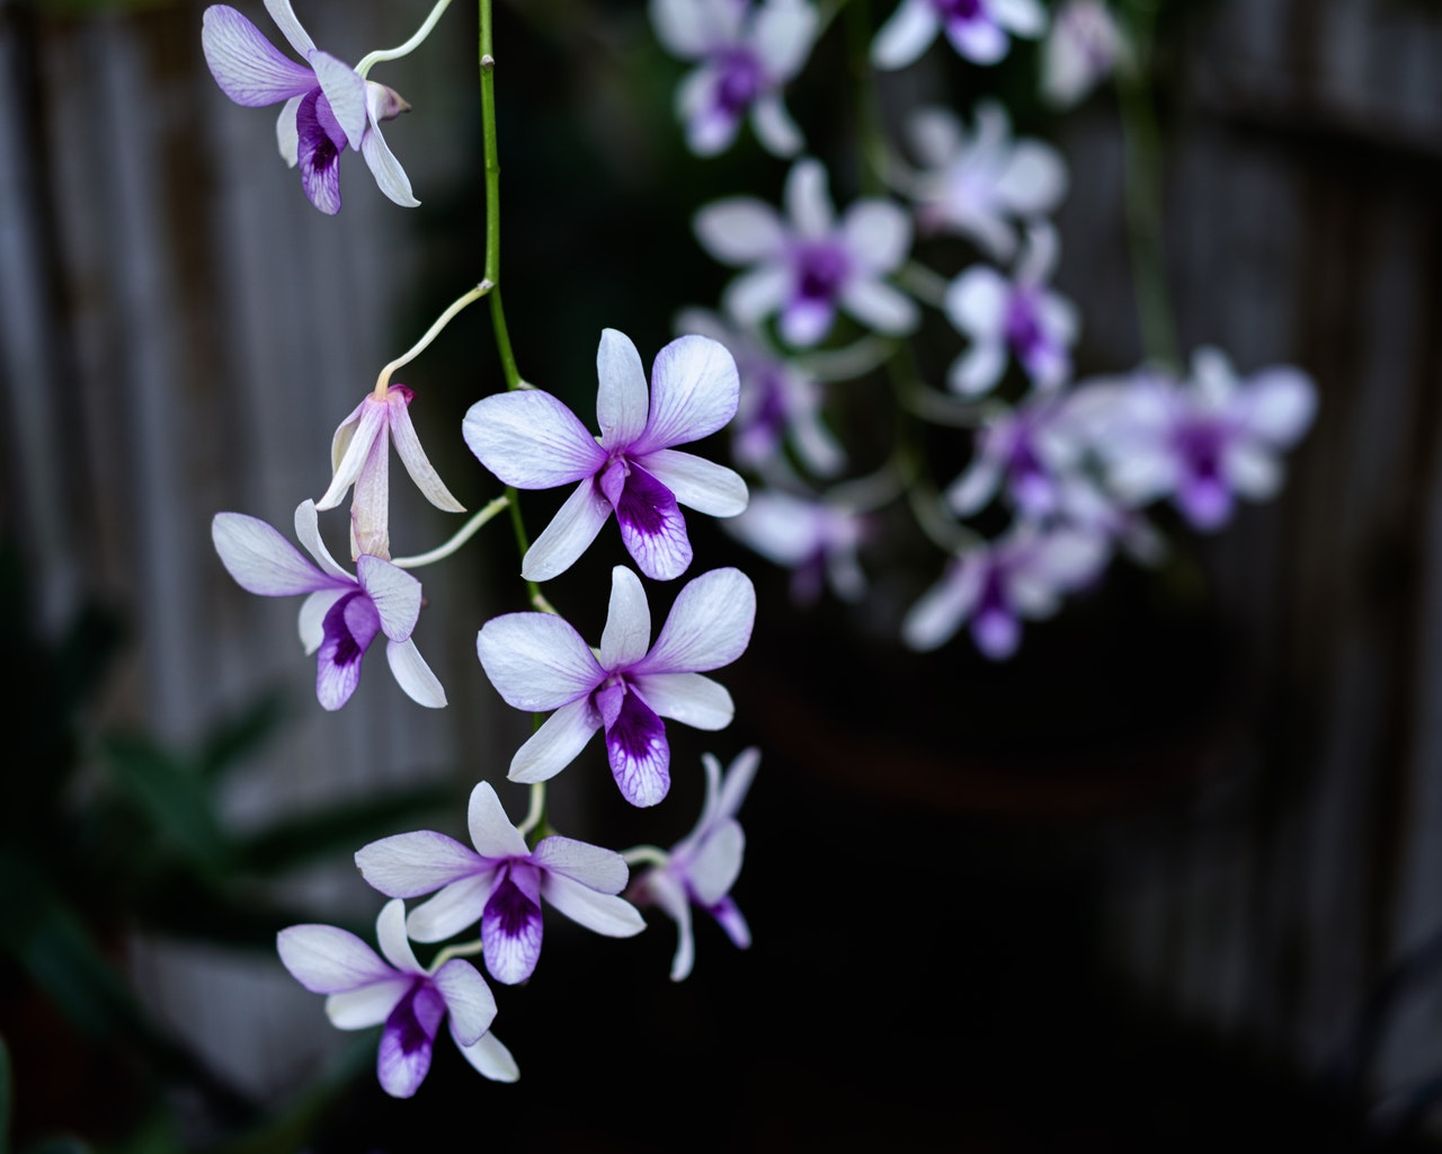 Mõni orhidee õitseb pikalt ja peaaegu pidevalt, teised üks kord aastas või veelgi harvemini.